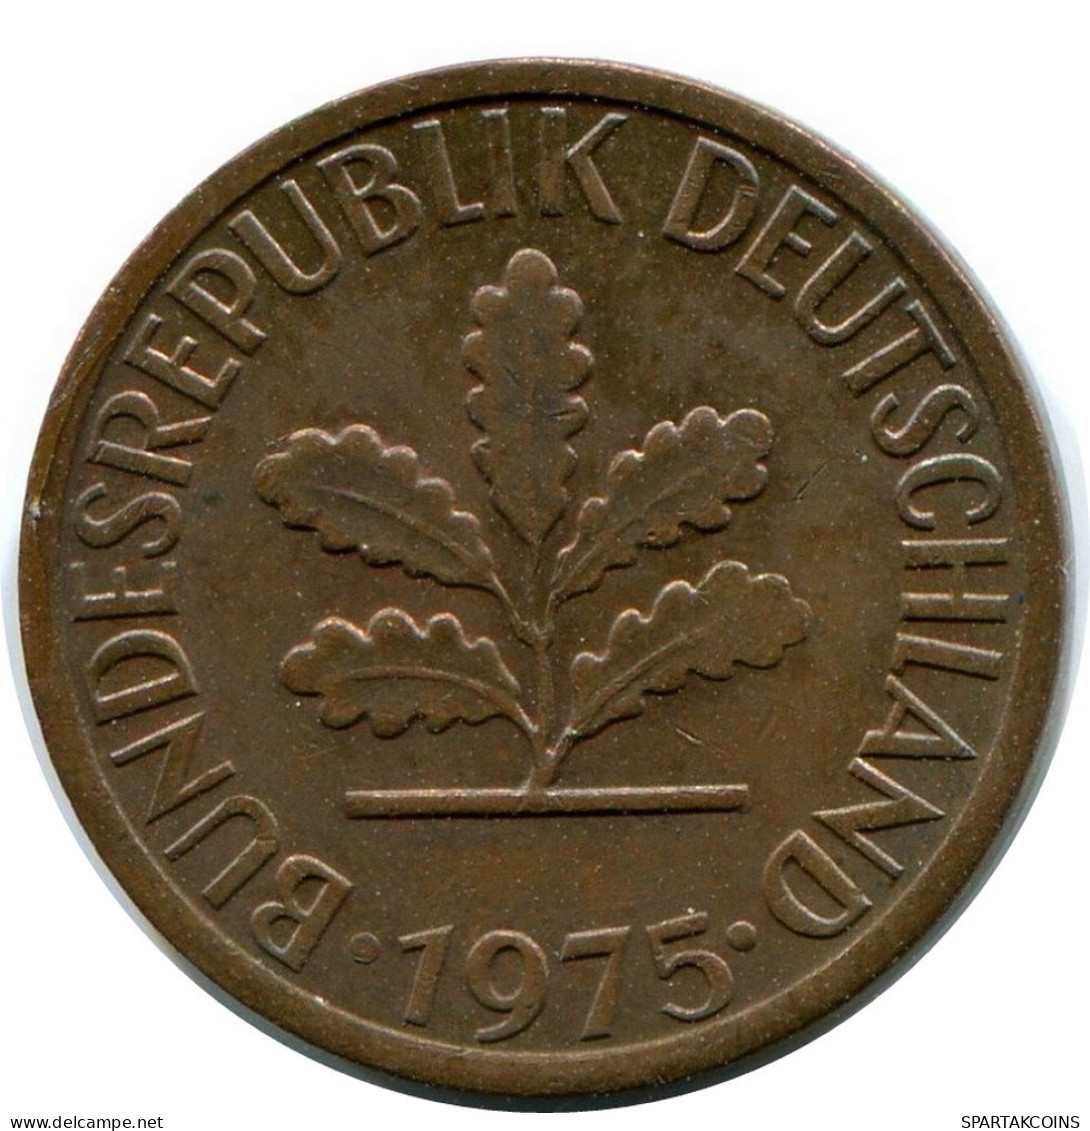 1 PFENNIG 1975 G WEST & UNIFIED GERMANY Coin #AW936.U.A - 1 Pfennig